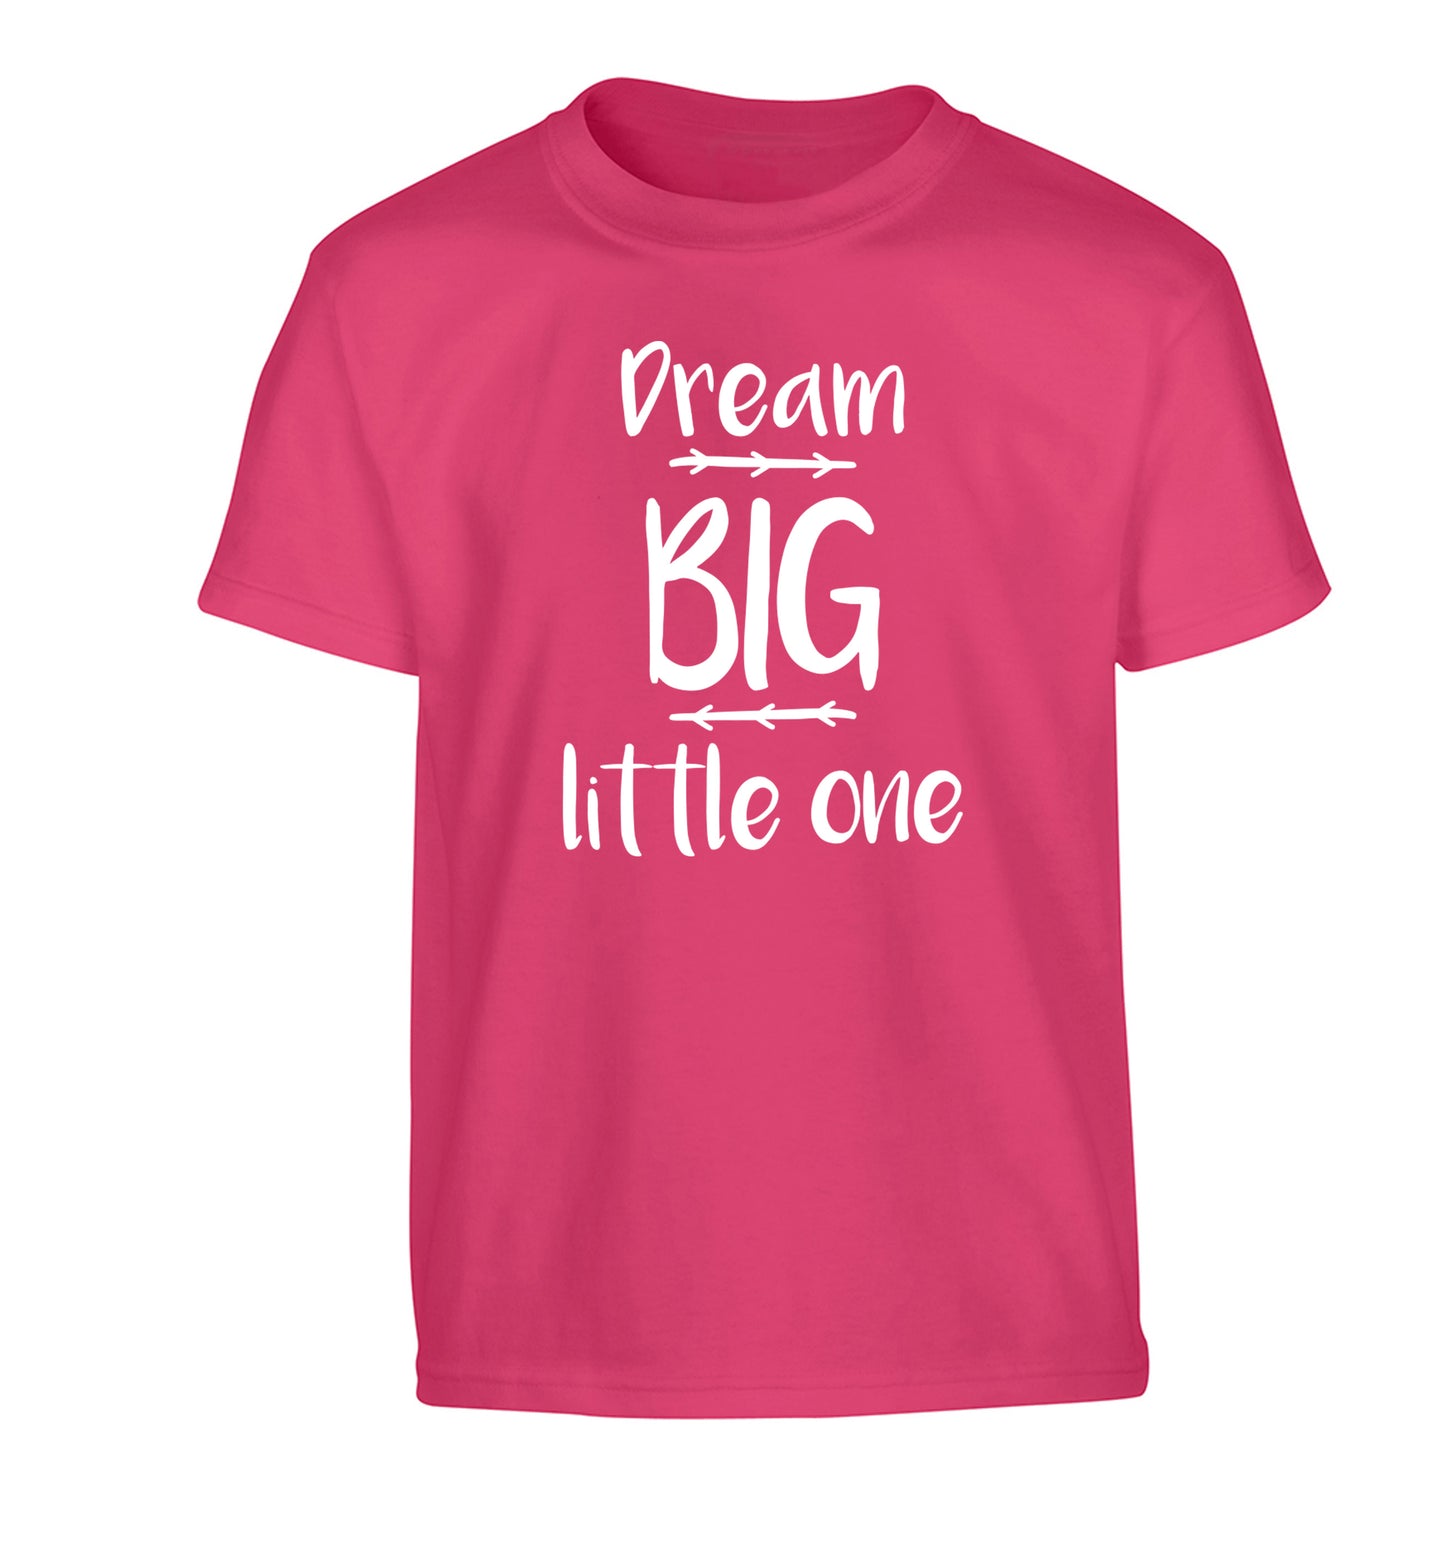 Dream big little one Children's pink Tshirt 12-14 Years